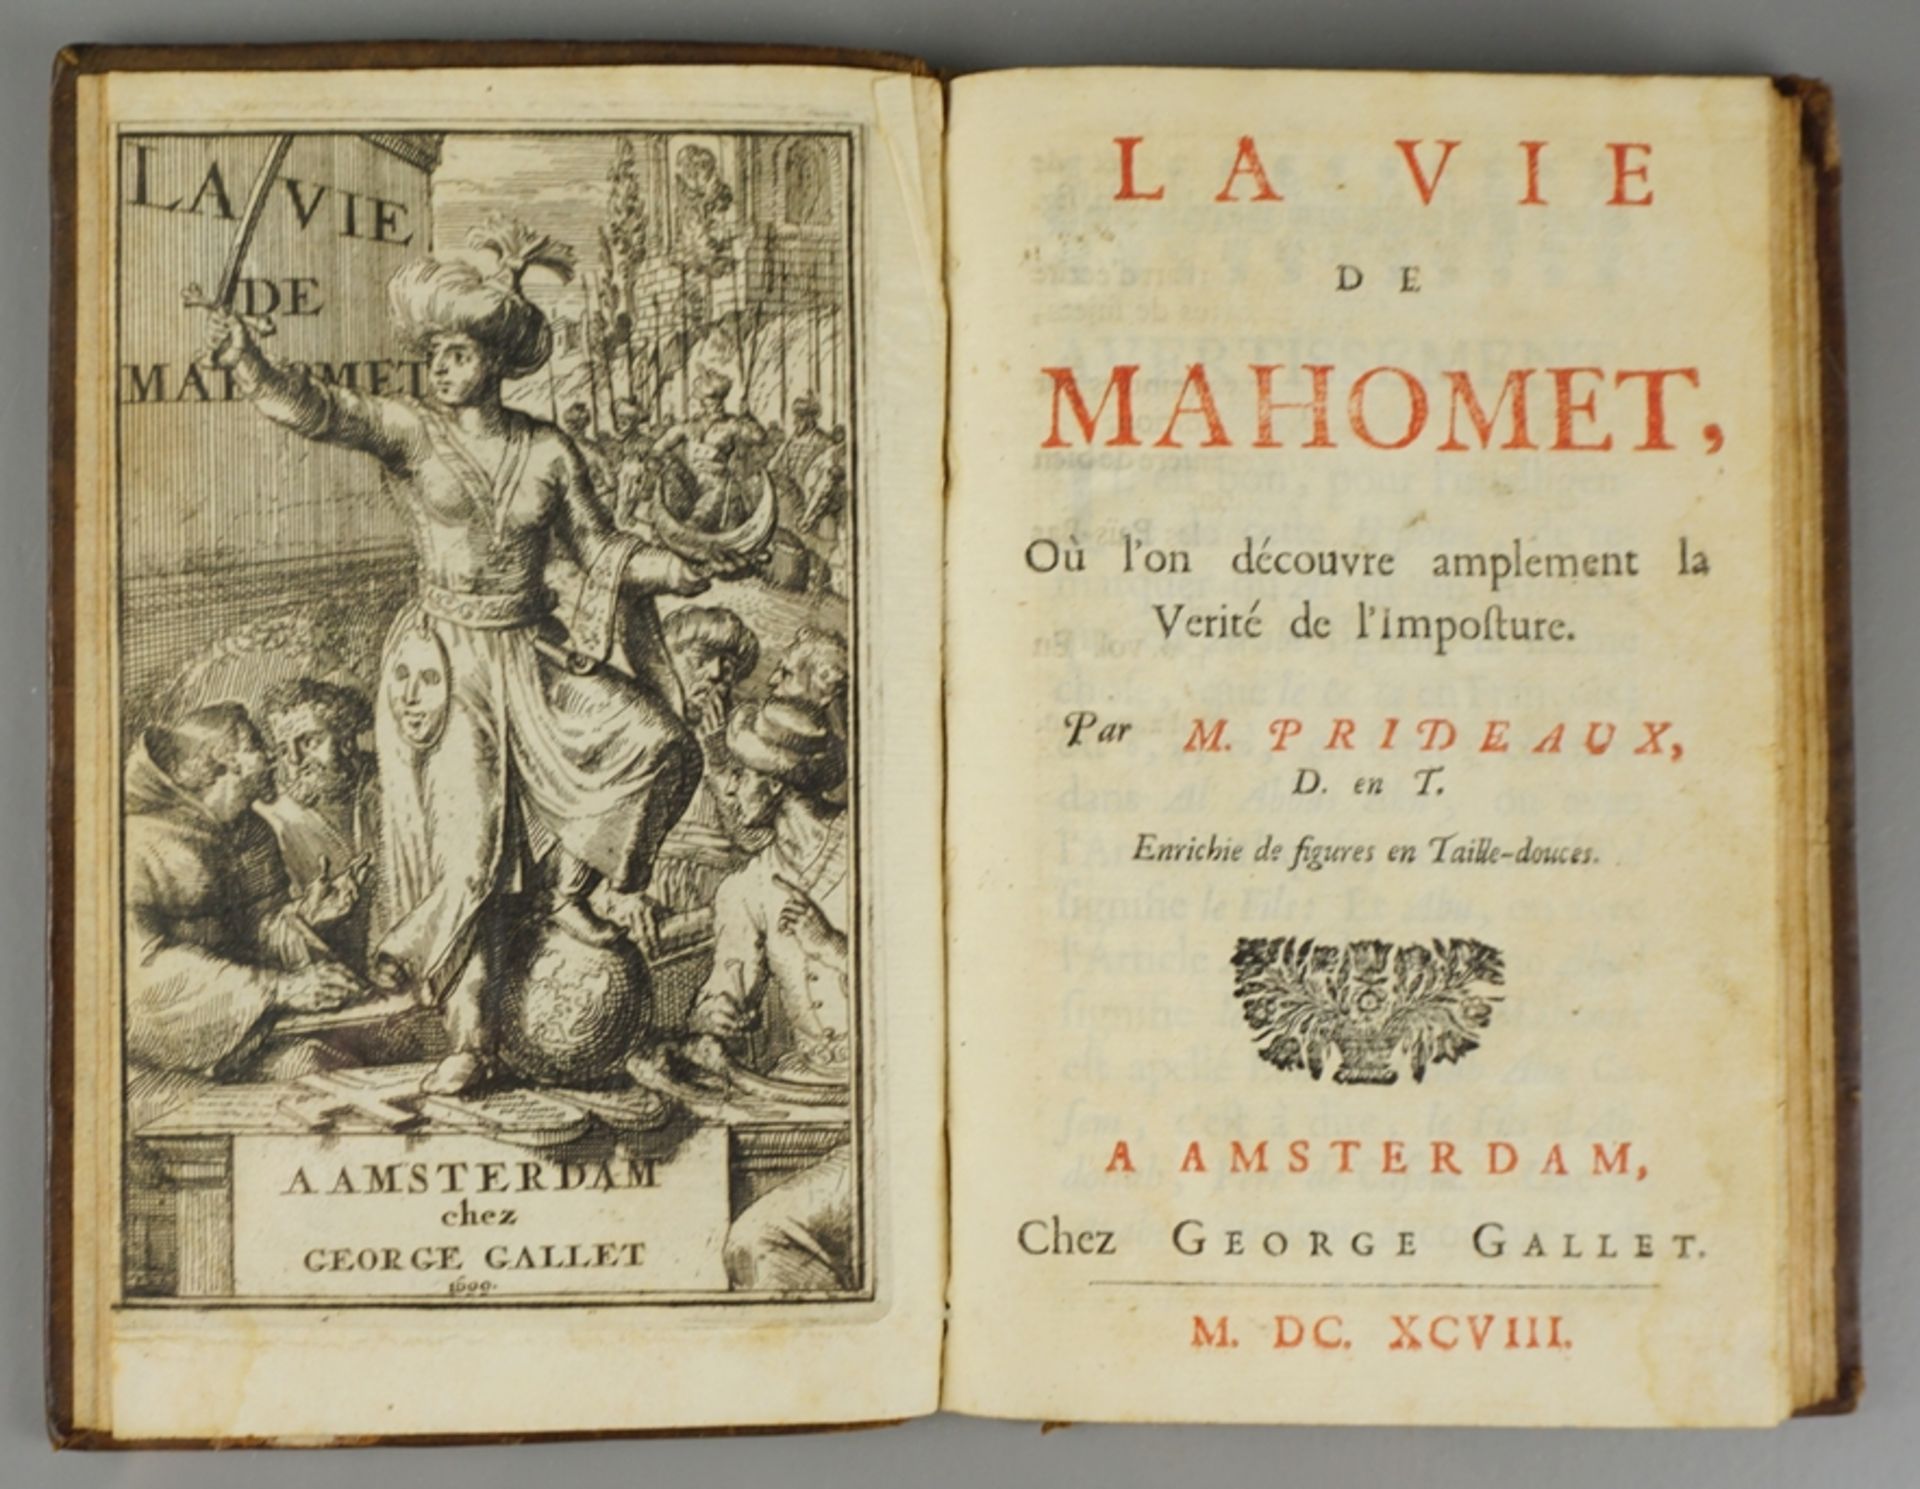 M. (Humphrey?) Prideaux, "La Vie de Mahomet", 1698